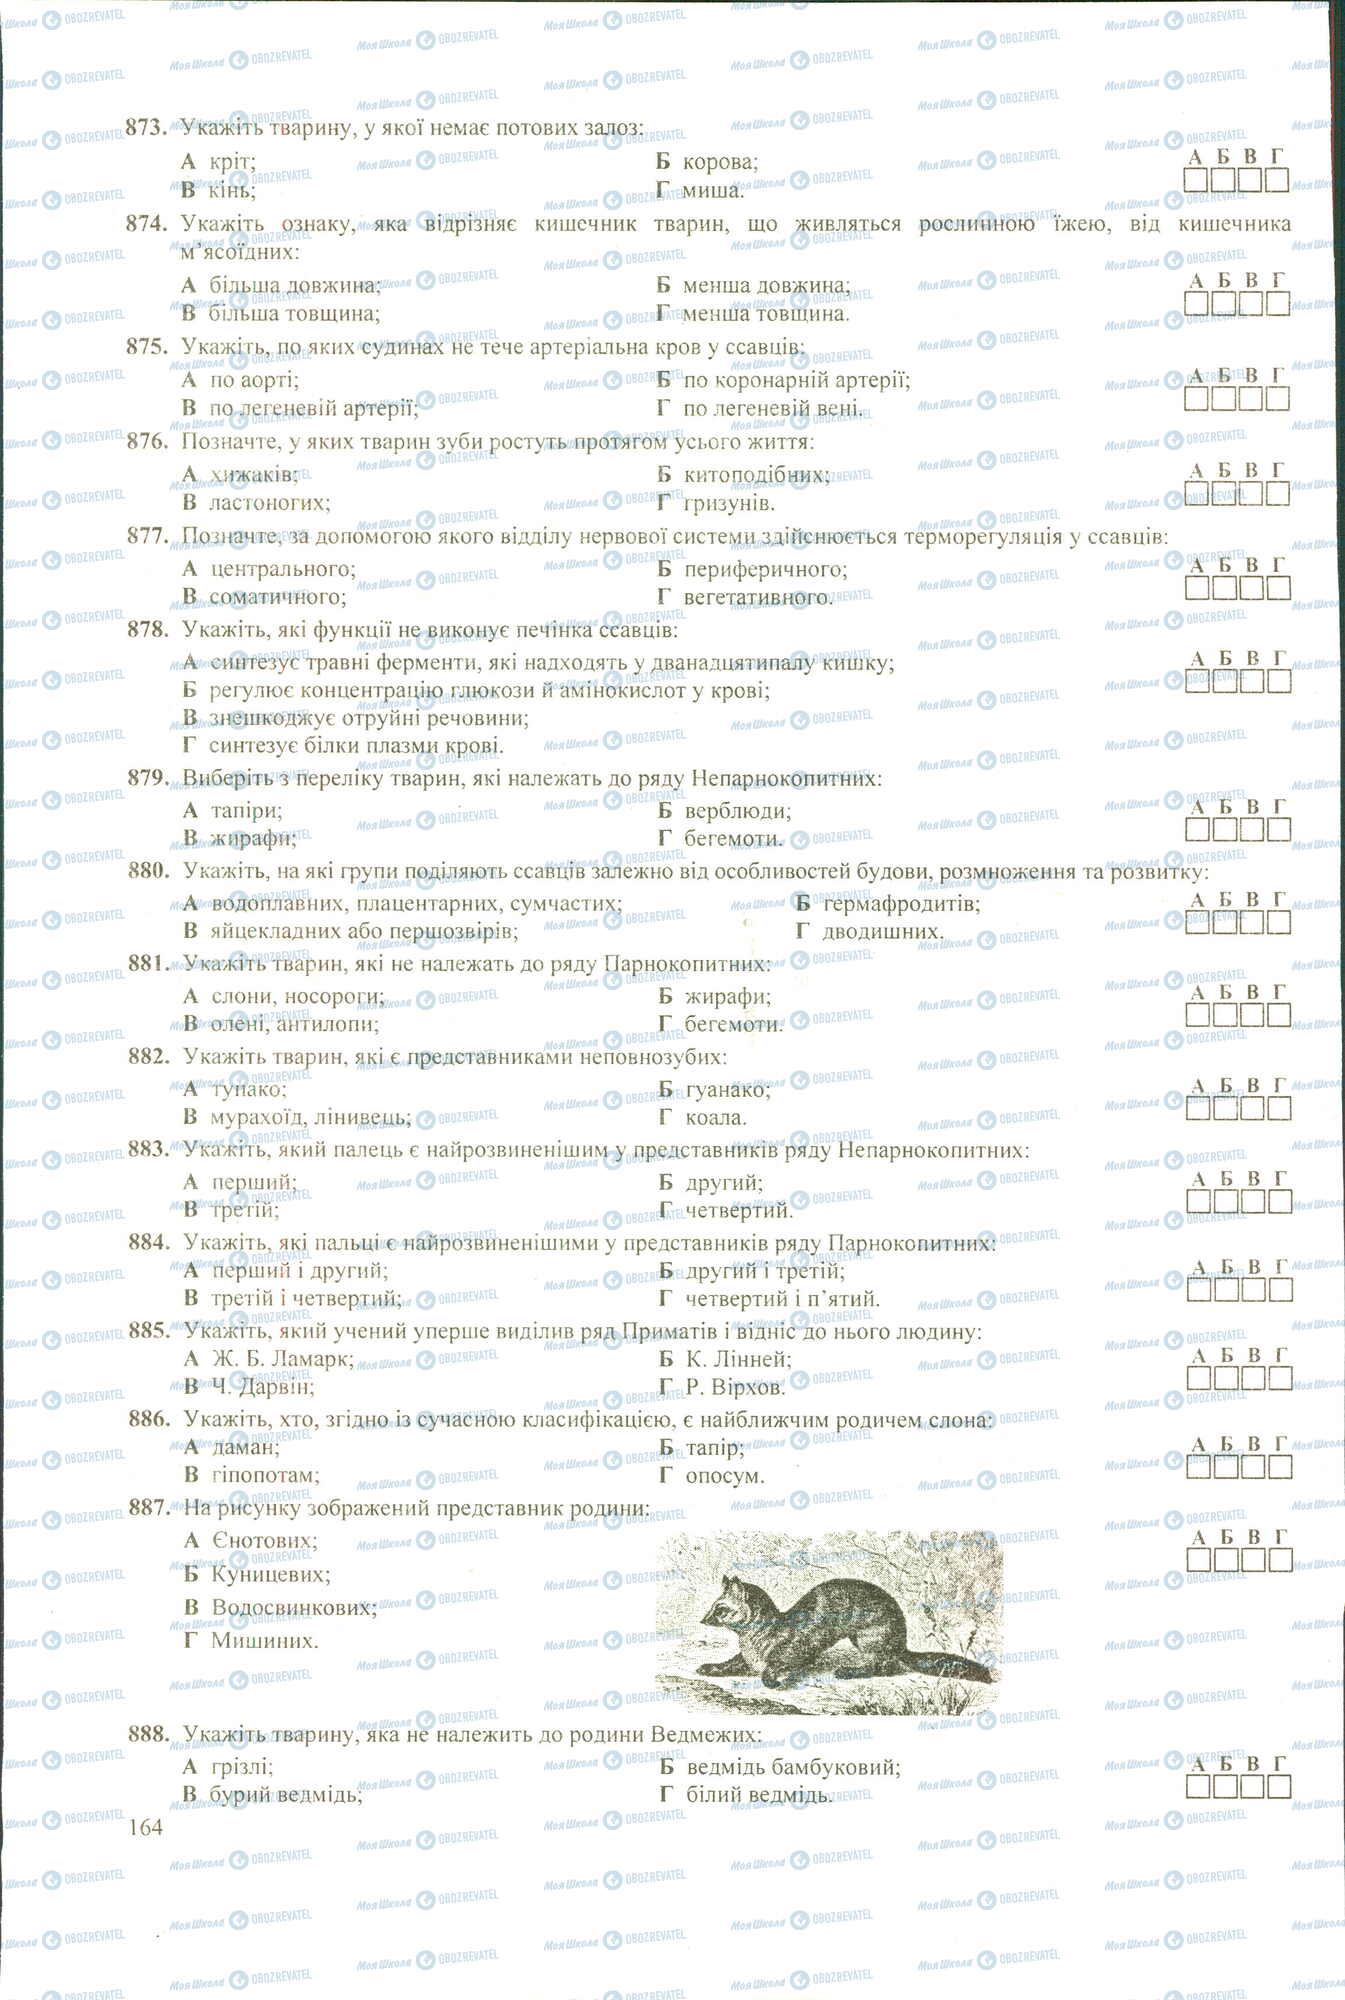 ЗНО Биология 11 класс страница 873-888